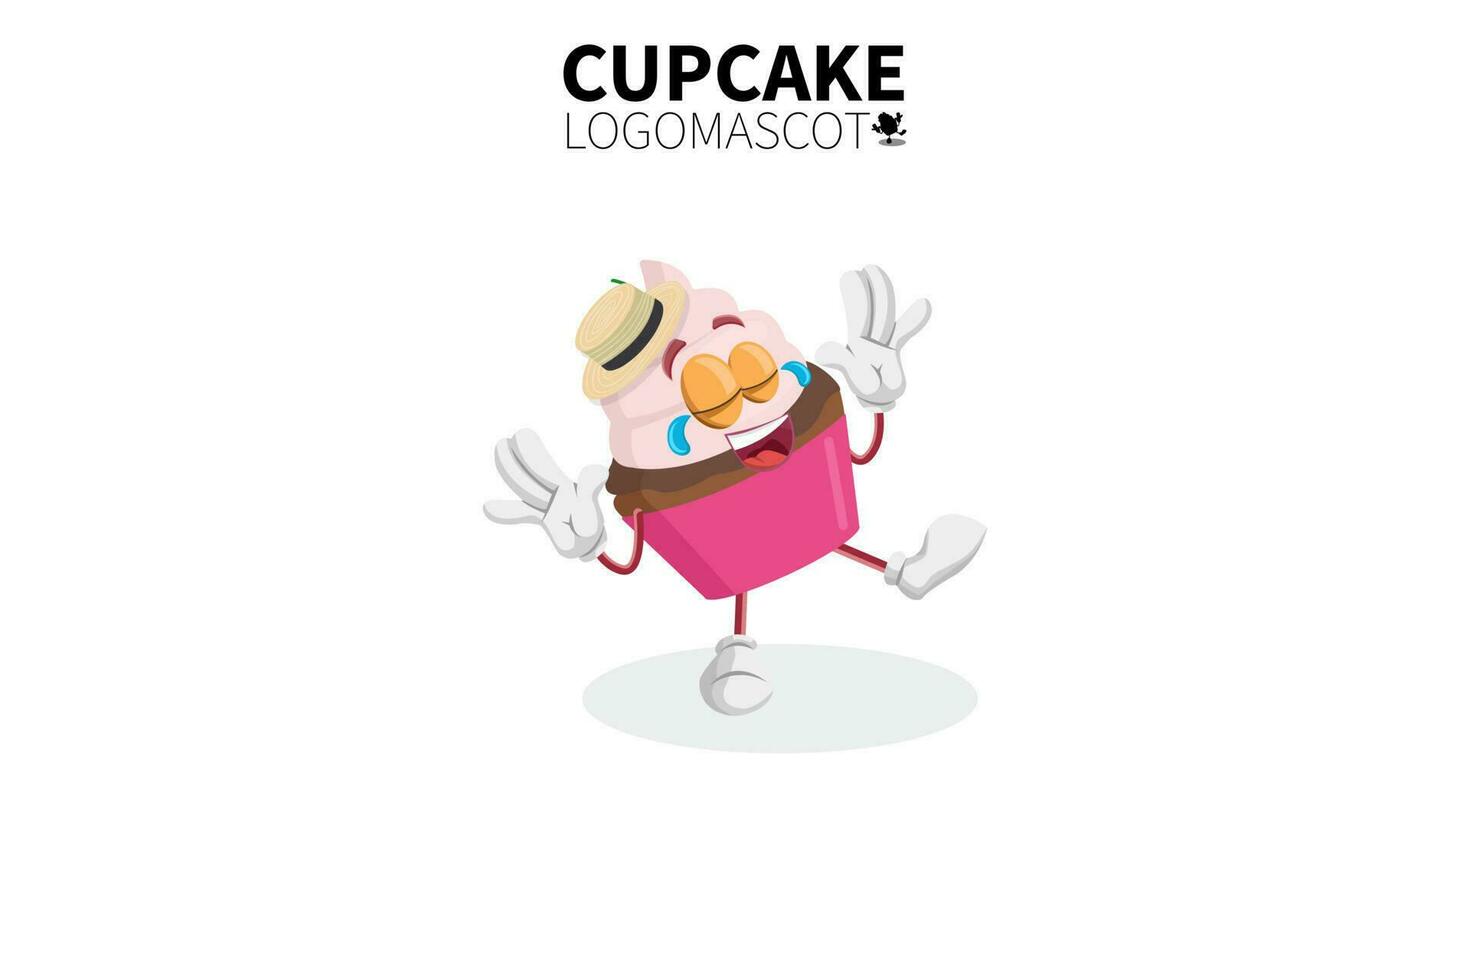 mascotte di cupcake dei cartoni animati, illustrazione vettoriale di una mascotte di un simpatico personaggio di cupcake rosa